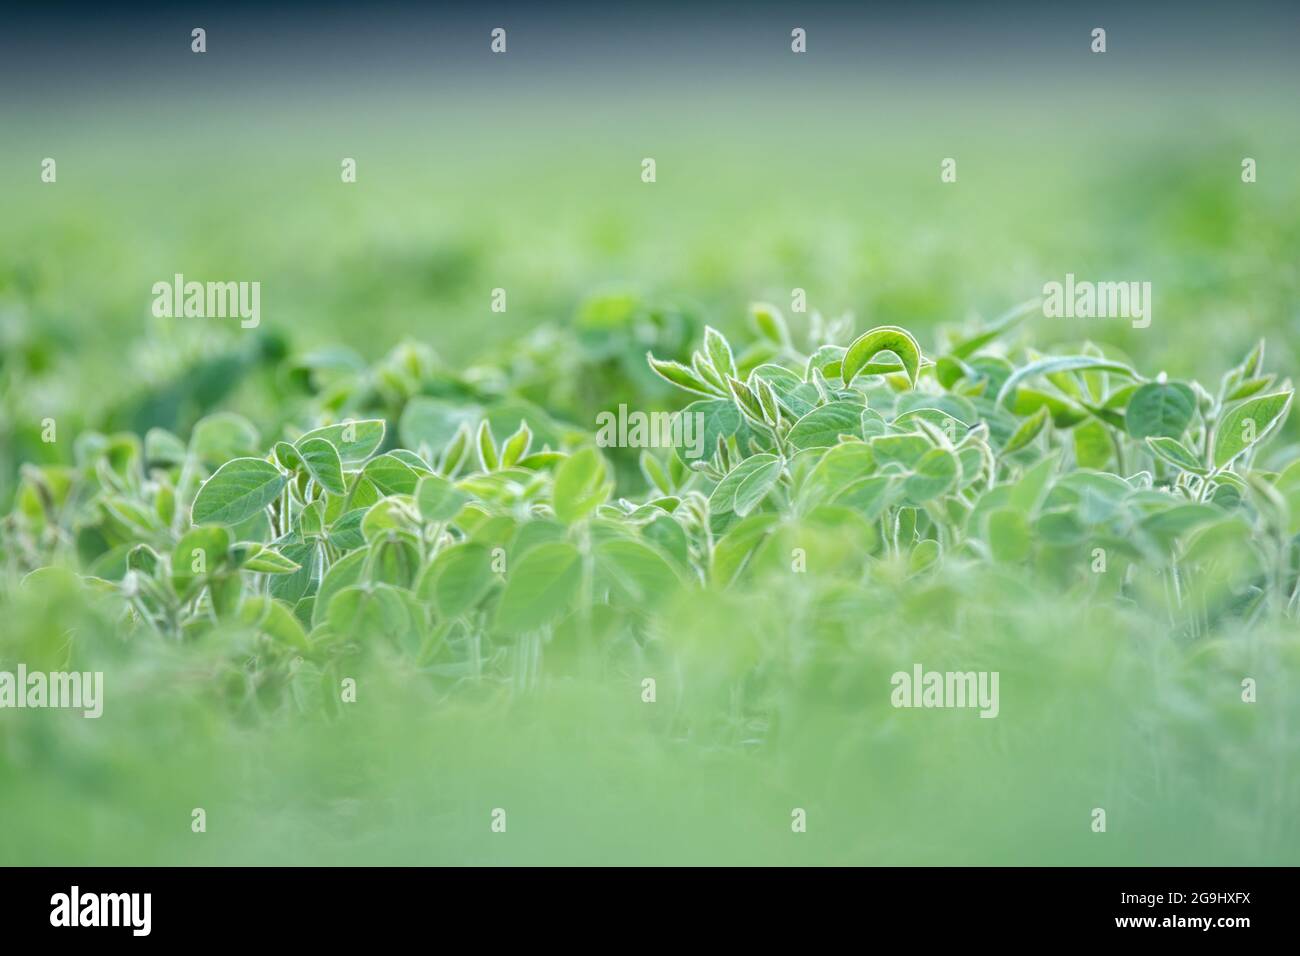 Plantas de soja que crecen en un campo de soja, profundidad de campo poco profunda Foto de stock